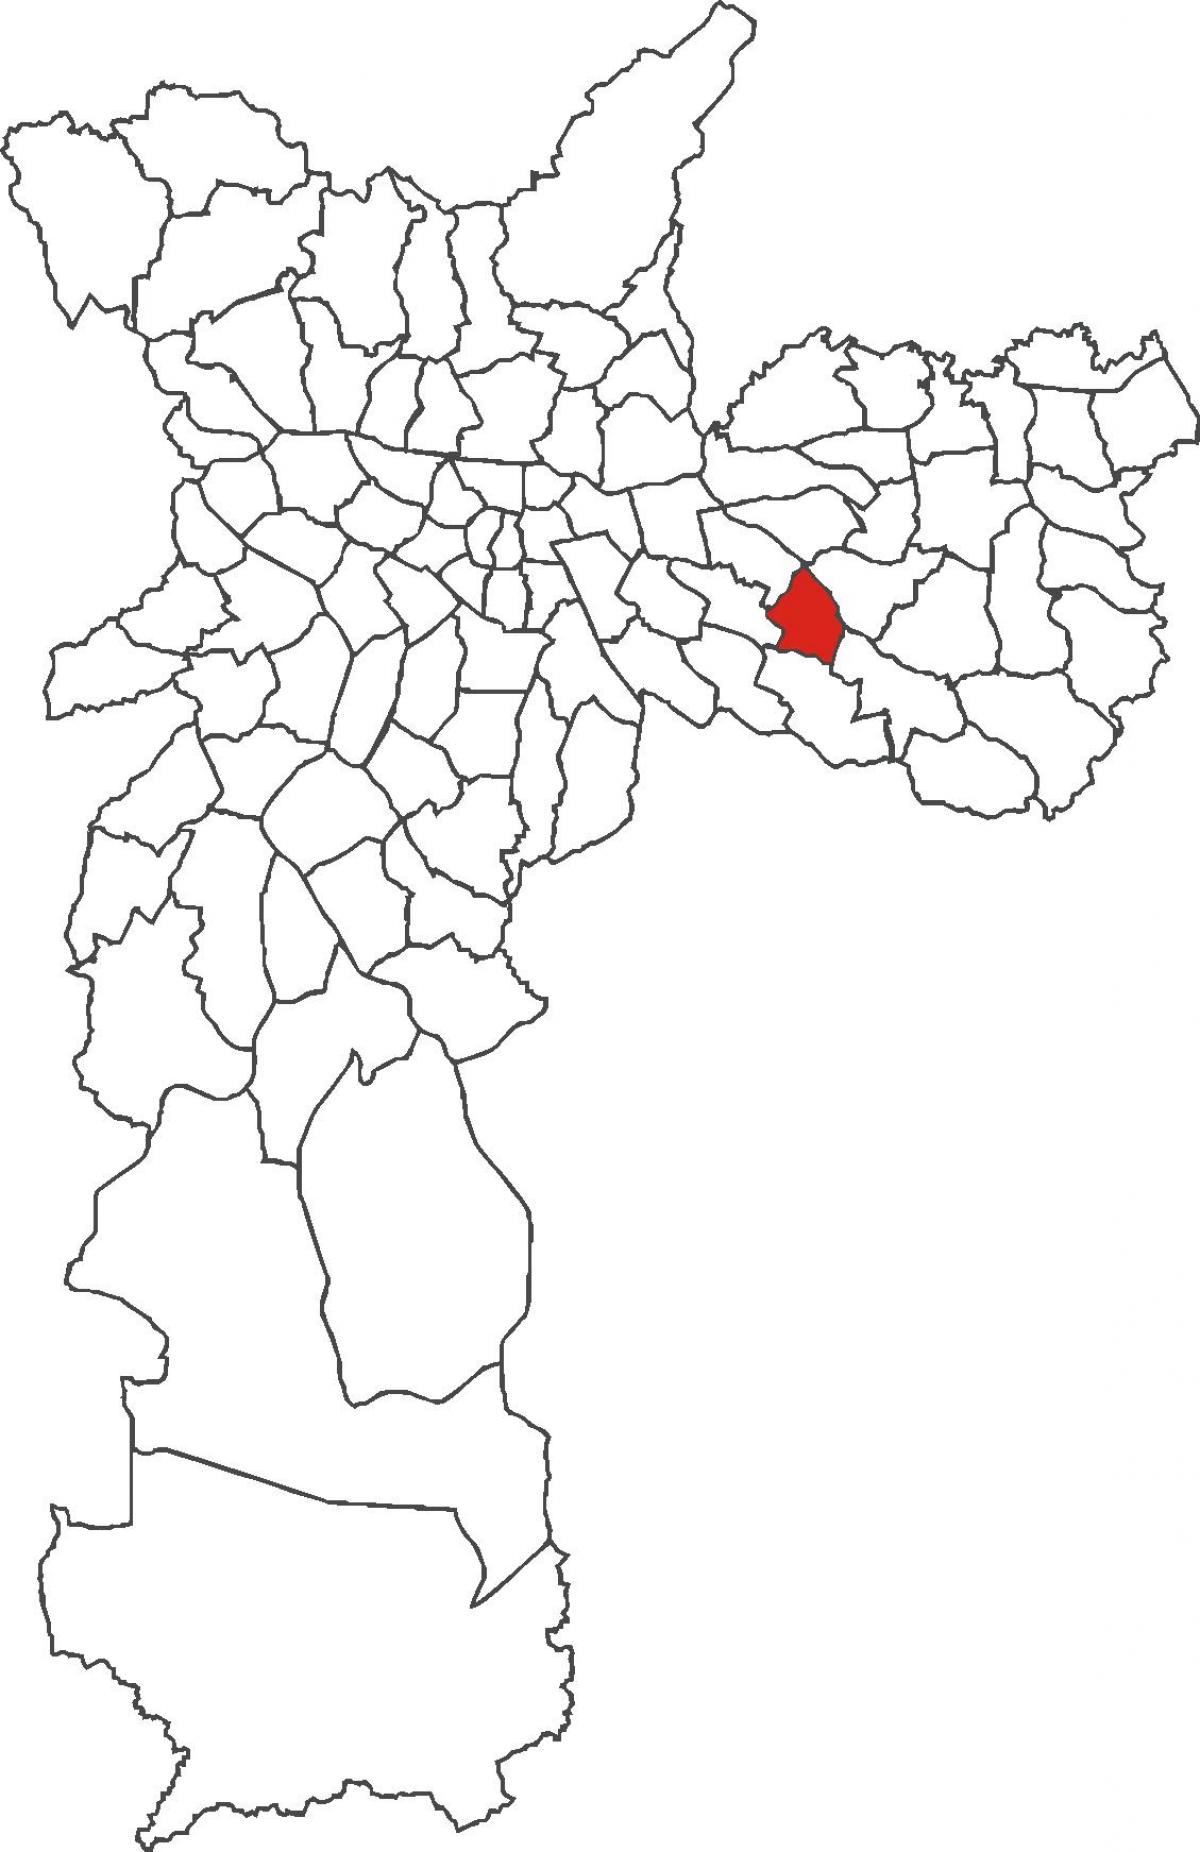 Mapa do distrito de Aricanduva